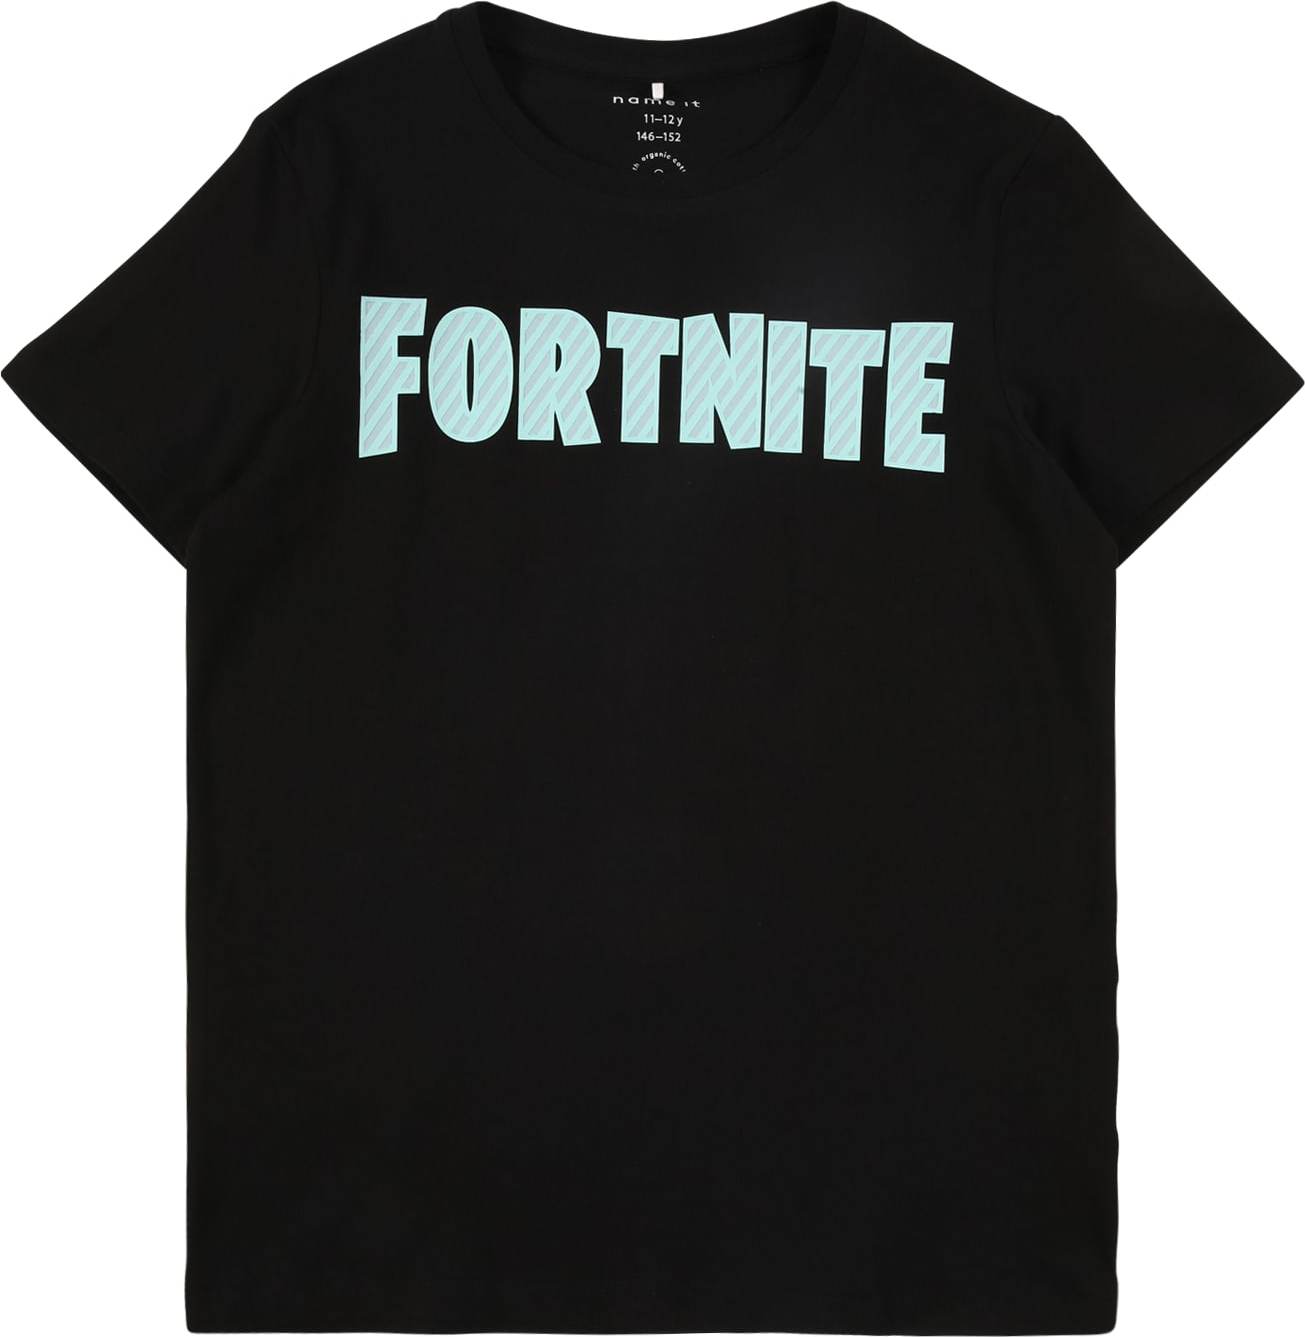 NAME IT Tričko 'Fortnite' azurová modrá / černá